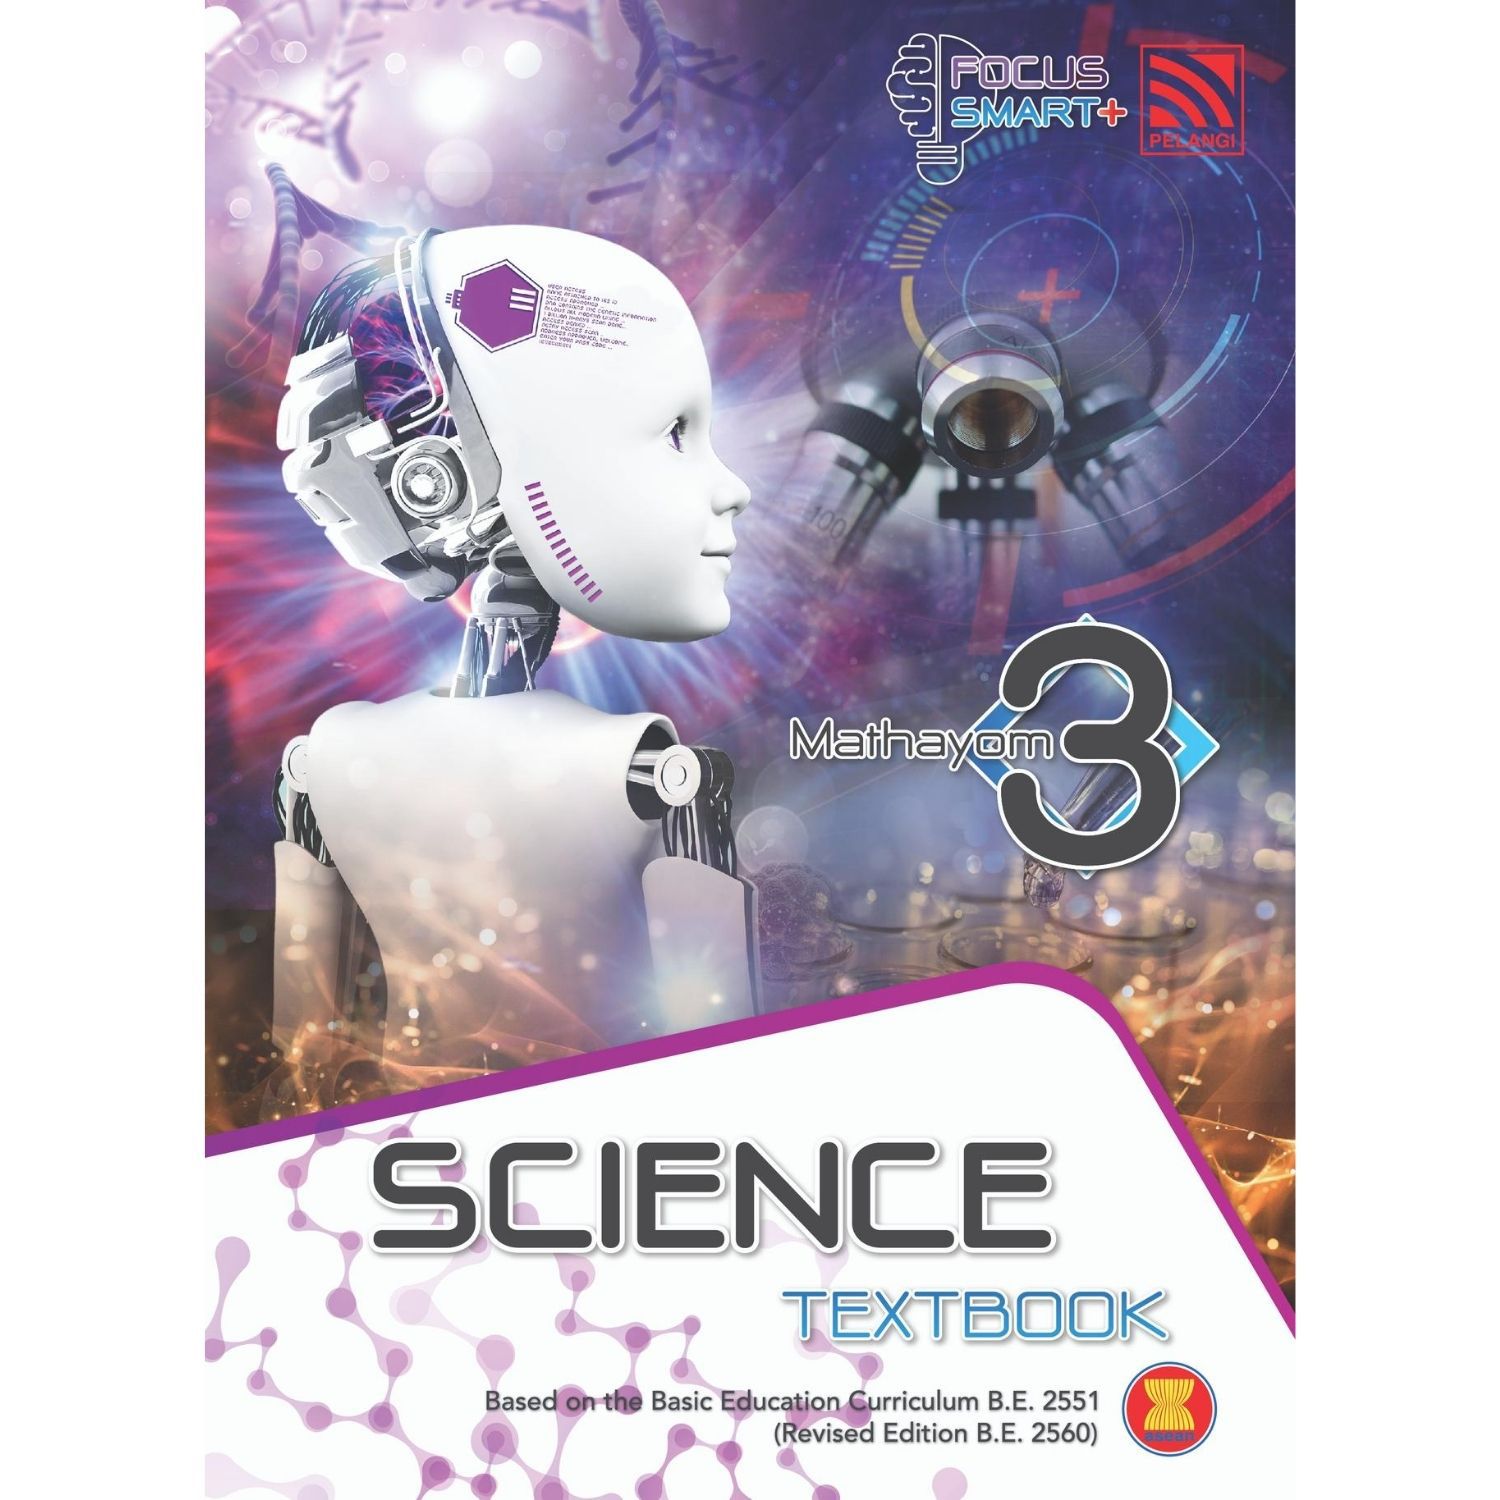 Focus Smart Plus Science Textbook M3